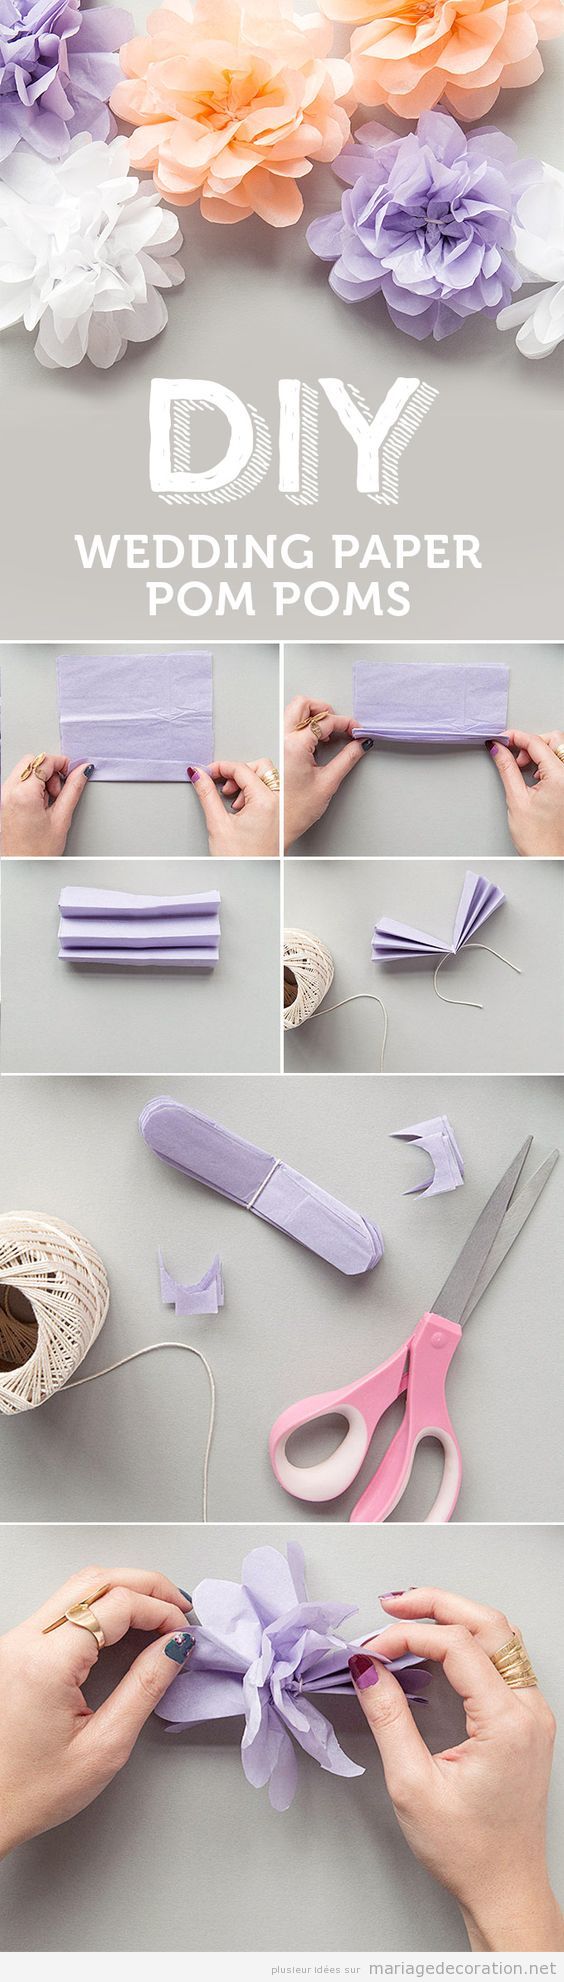 Tuto fabriquer pompons en papier pour décorer mariage pas cher